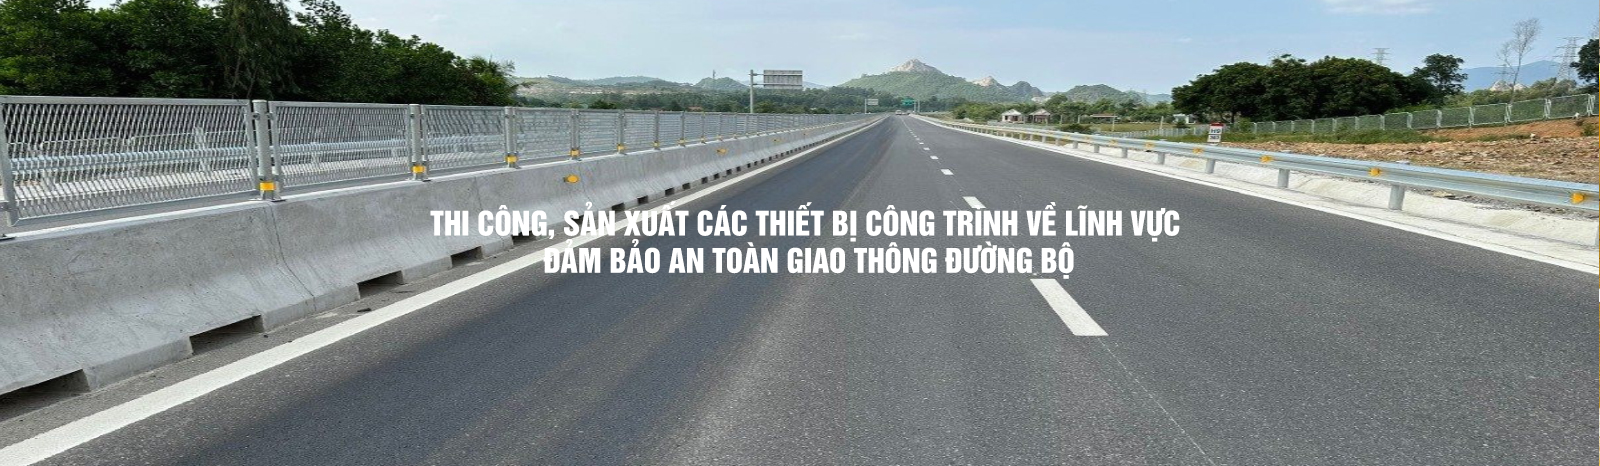 Đảm bảo an toàn giao thông đường bộ